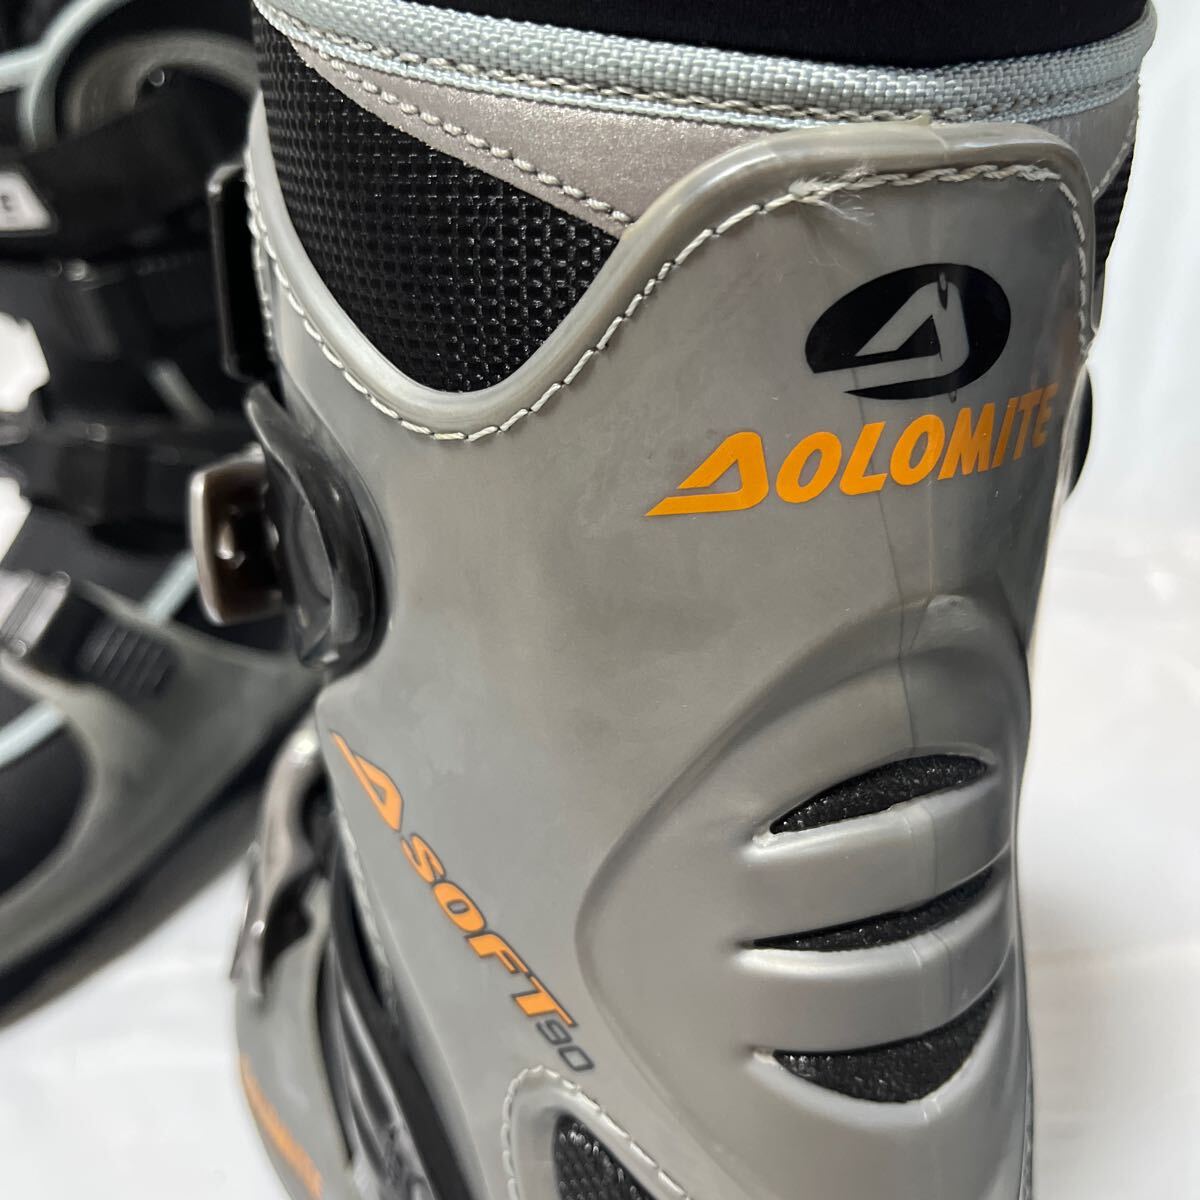  лыжи ботинки AOLOMITE FLEX CARVE лыжи обувь лыжи обувь 26.5cm б/у товар зимние виды спорта winter спорт Yupack отправка 